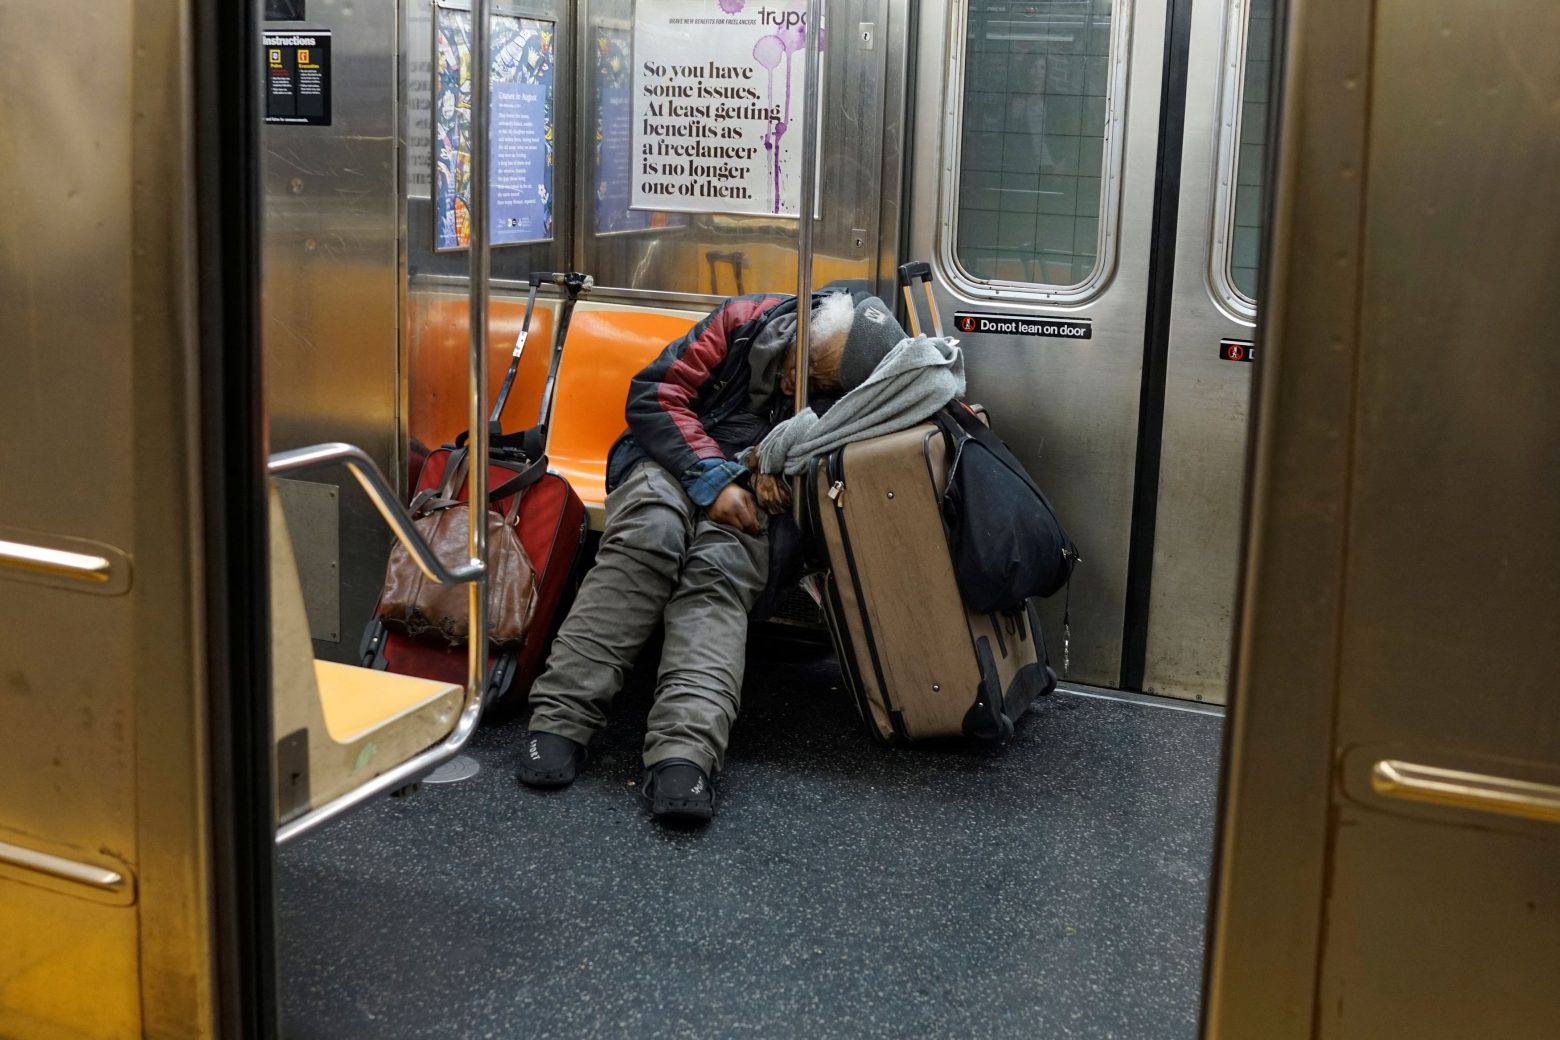 ΗΠΑ: Οι αρχές στη Νέα Υόρκη θέλουν να διώξουν τους άστεγους από το μετρό - Κατηγορούνται για την εγκληματικότητα